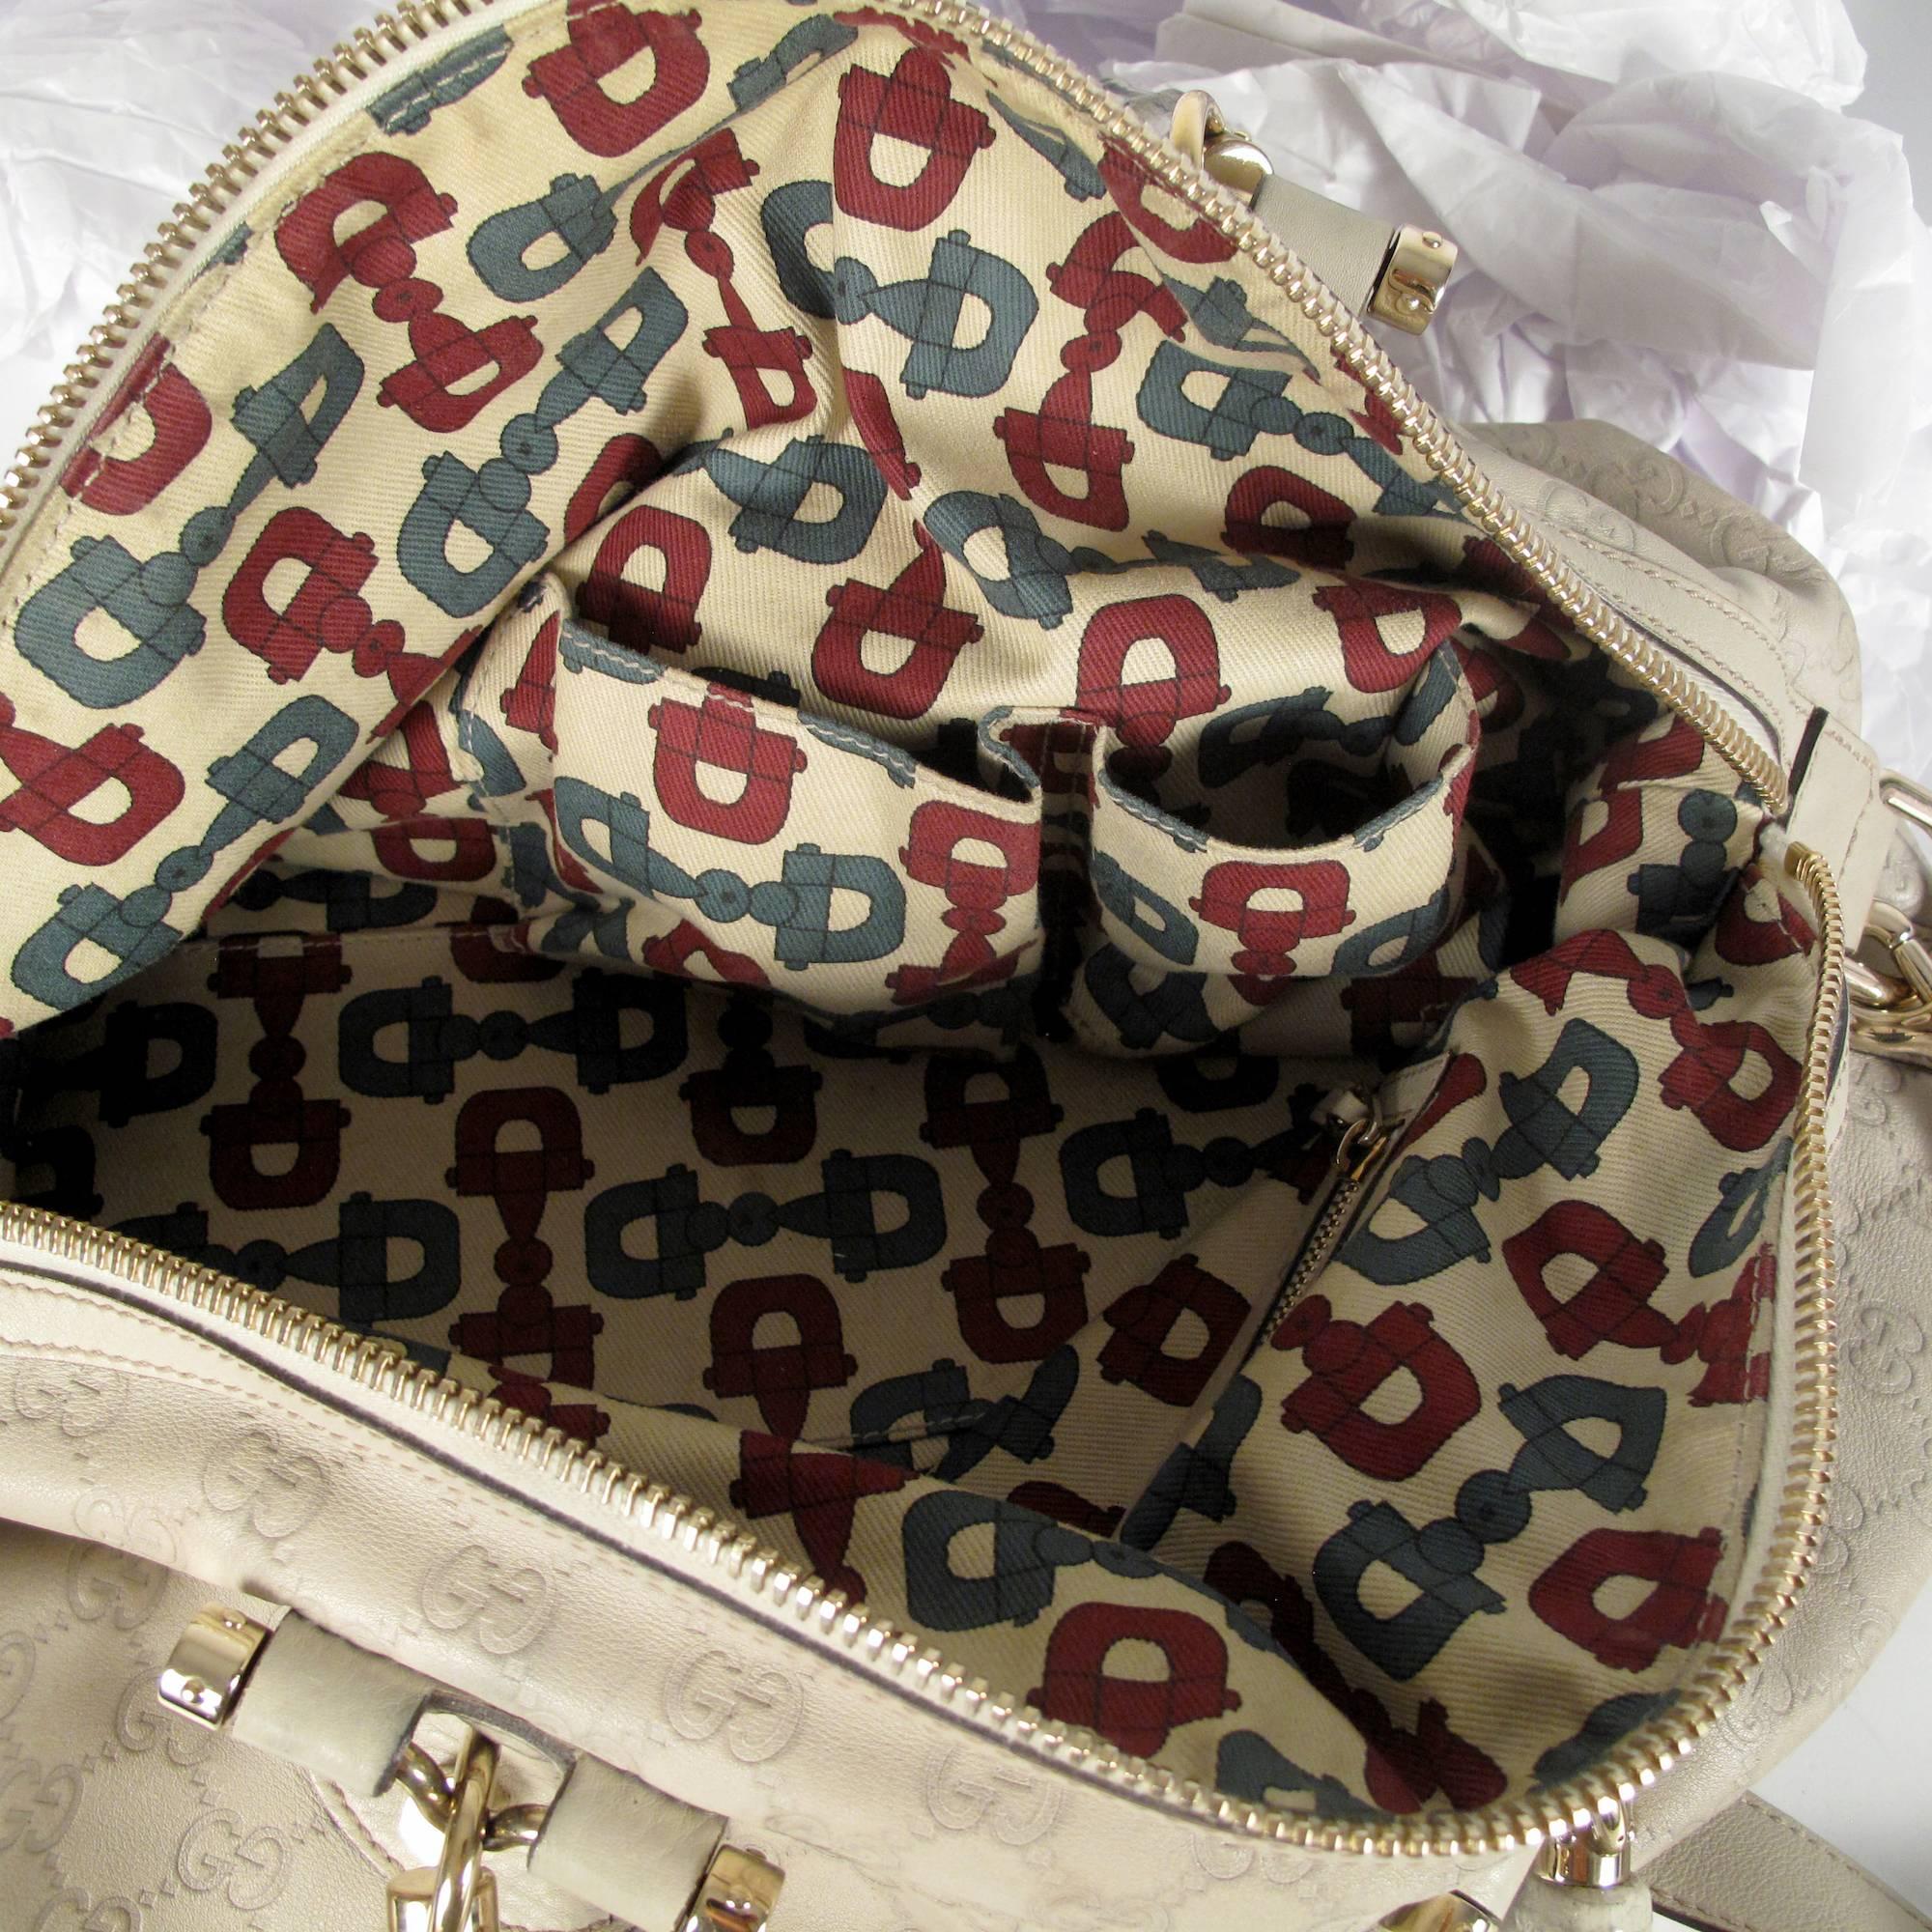 Gucci Bamboo Leather Monogram Shoulder Bag - Tan Beige GG Gold Satchel Handbag 3